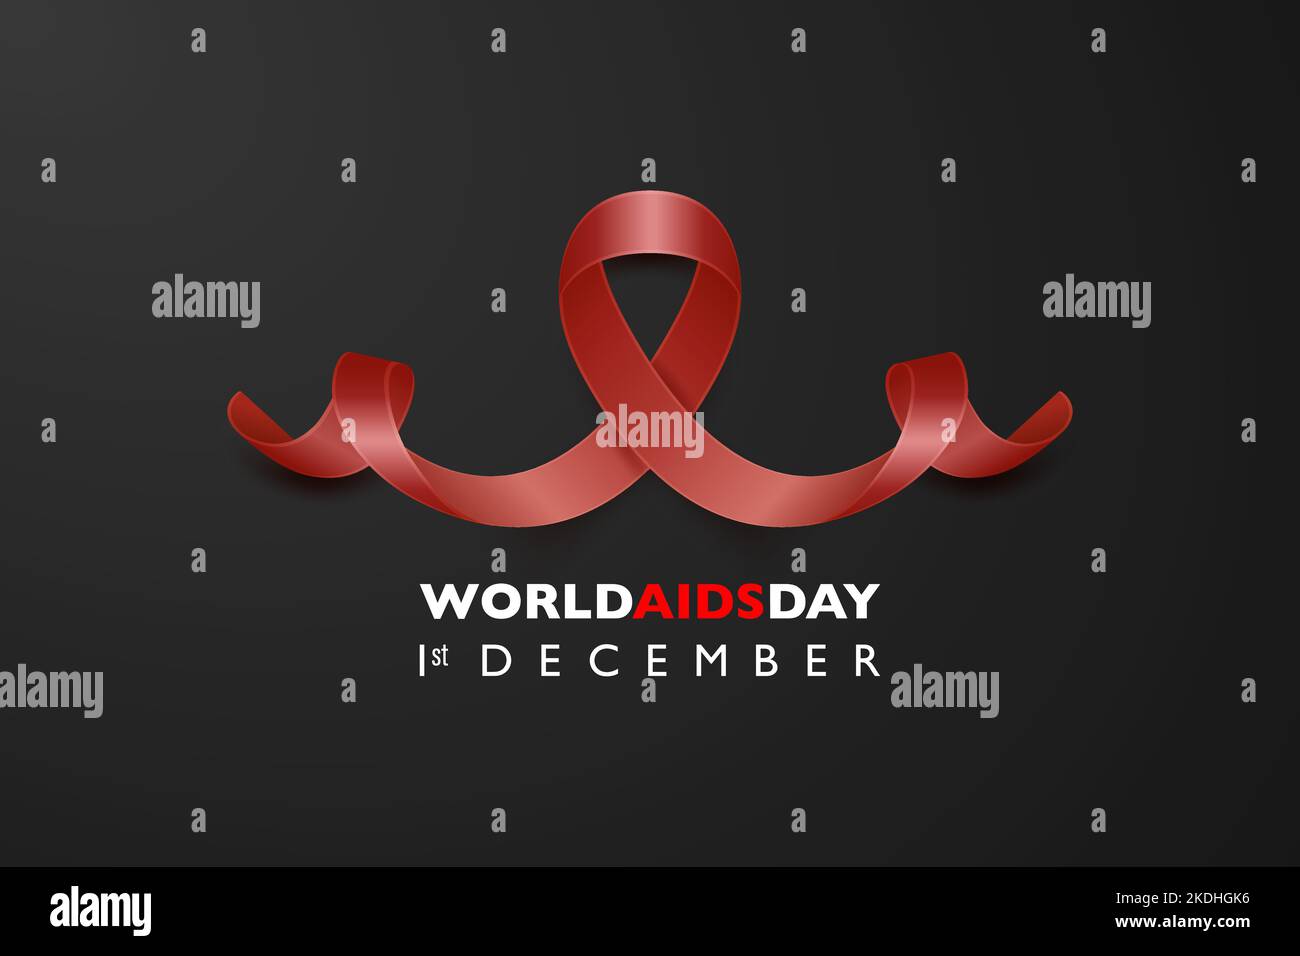 Welt-AIDS-Tag-Banner - AIDS-Bewusstsein rotes Seidenband auf schwarzem horizontalen Hintergrund. Aids Day-Konzept. Design-Vorlage für 1. Dezember Poster Stock Vektor